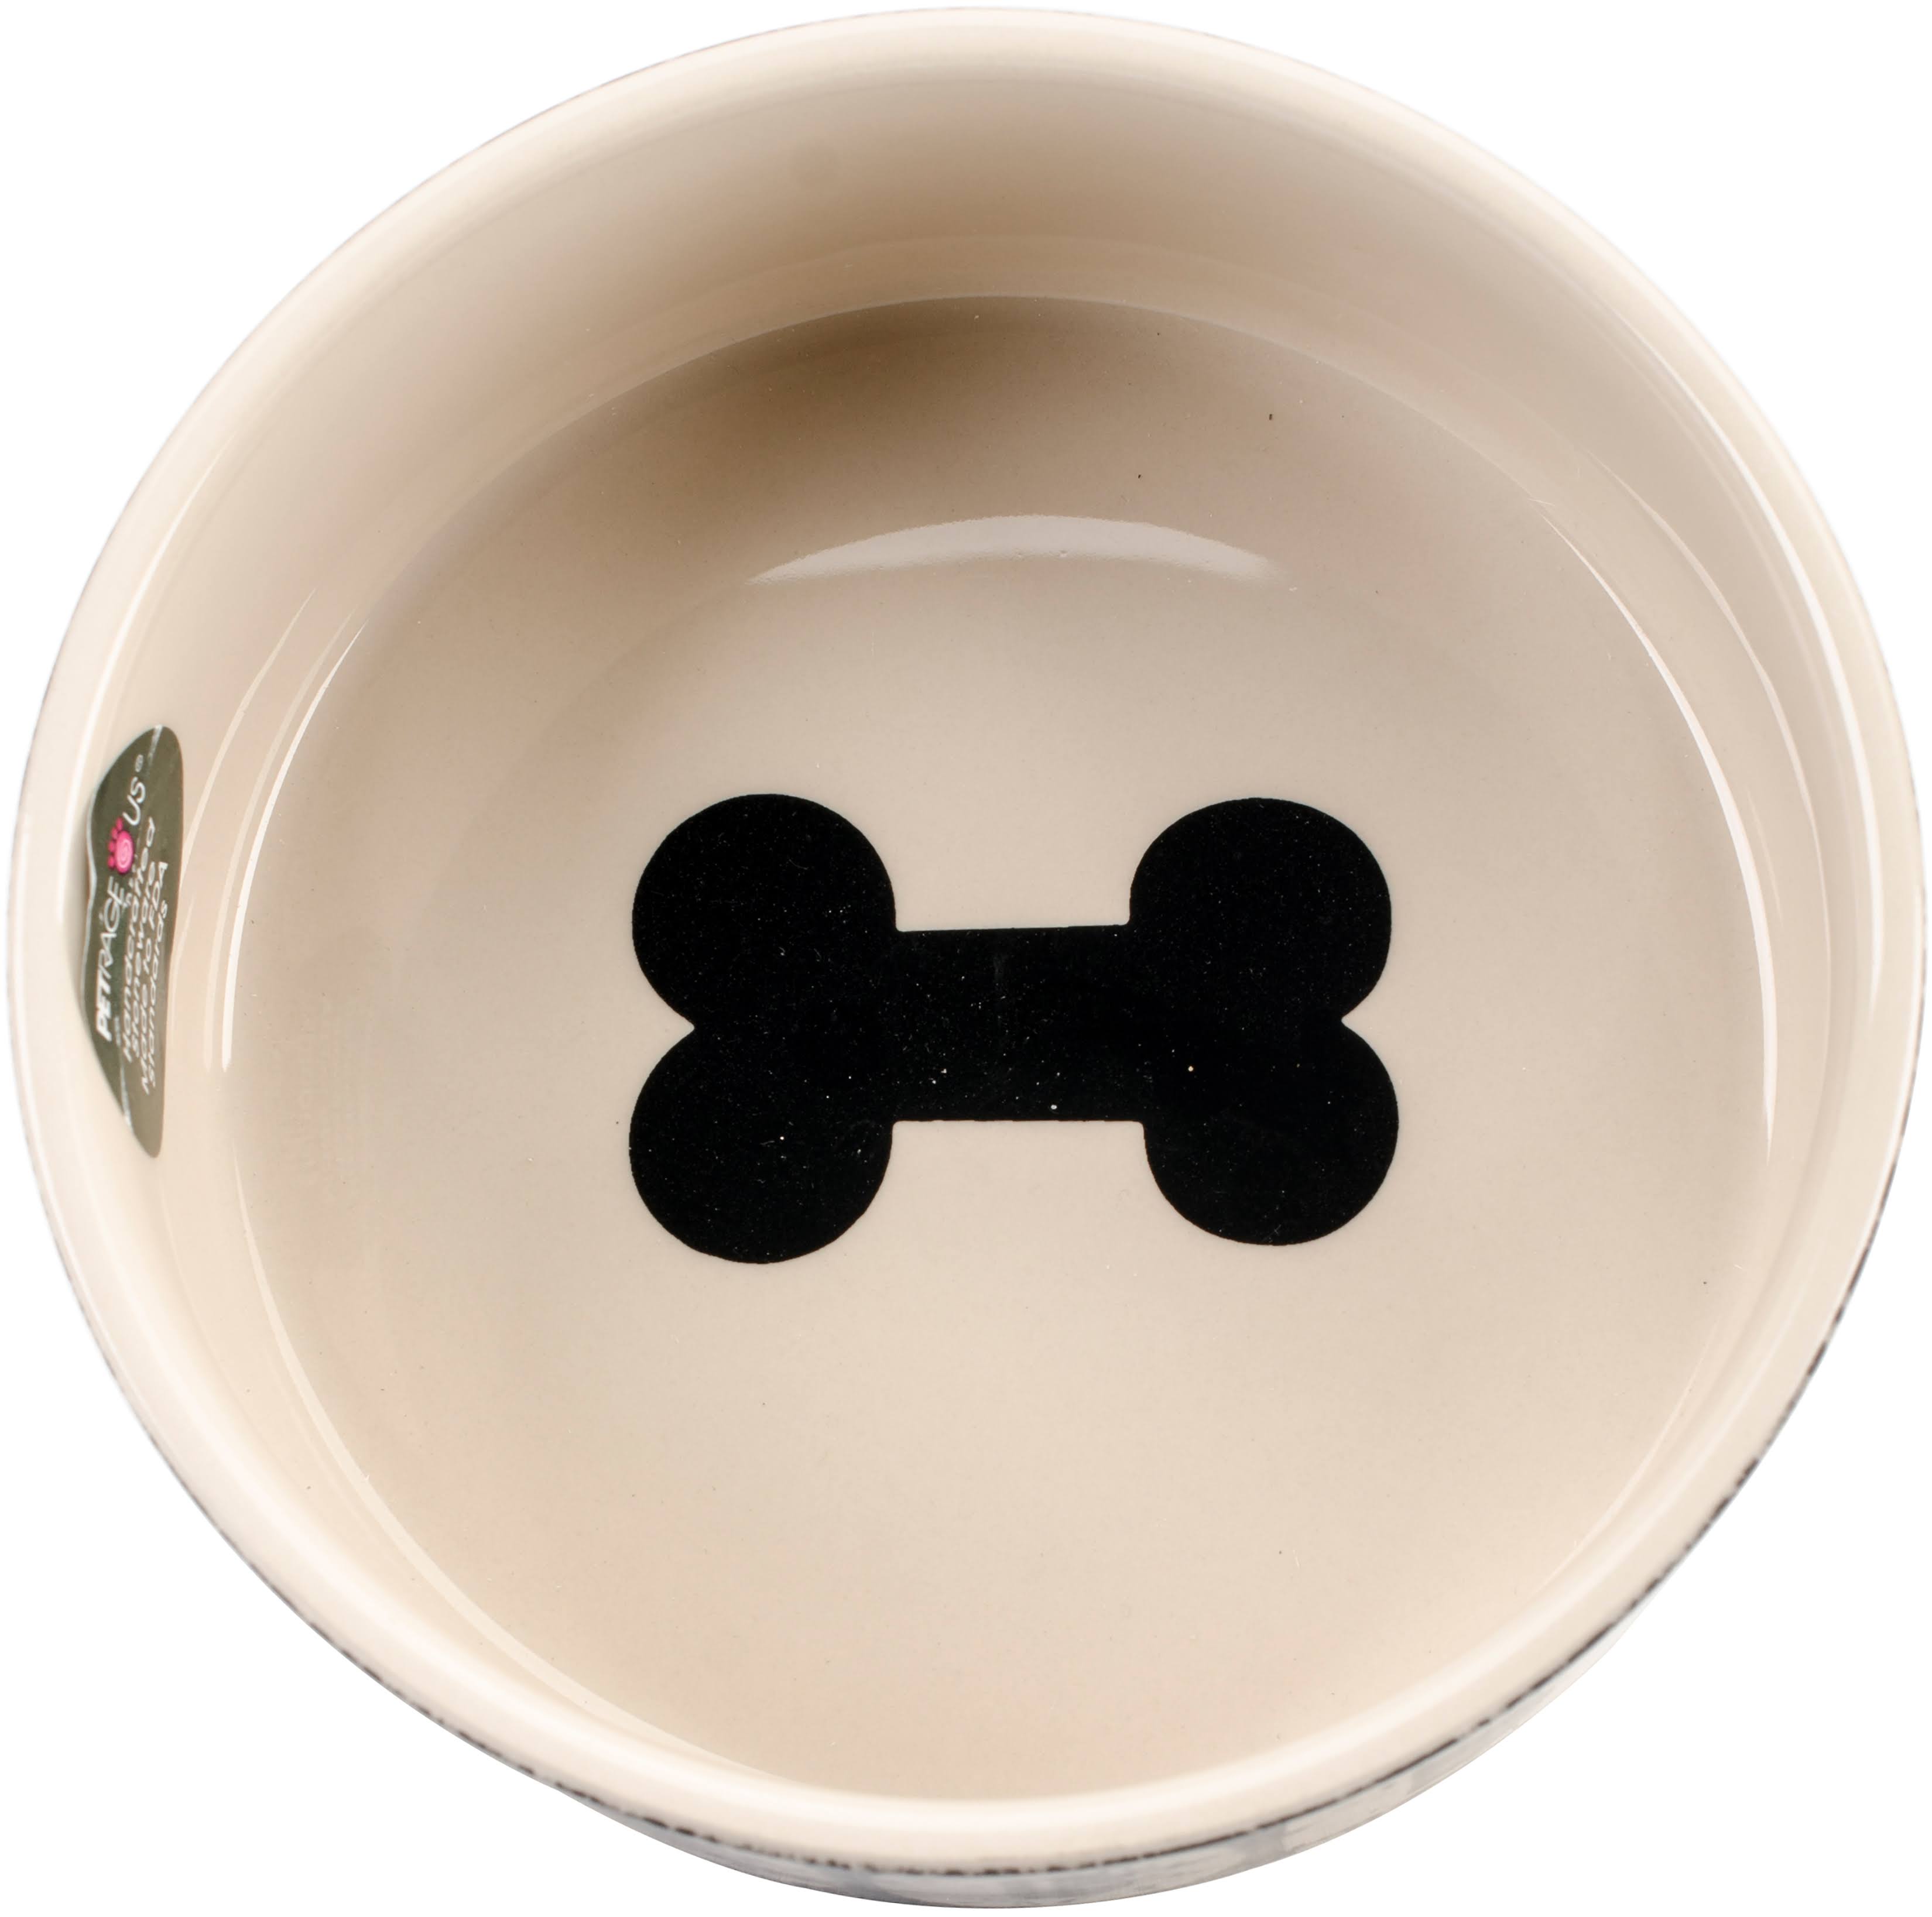 PetRageous 3.5-Cup Food Vintage Pet Bowl - Black/Natural, 6"